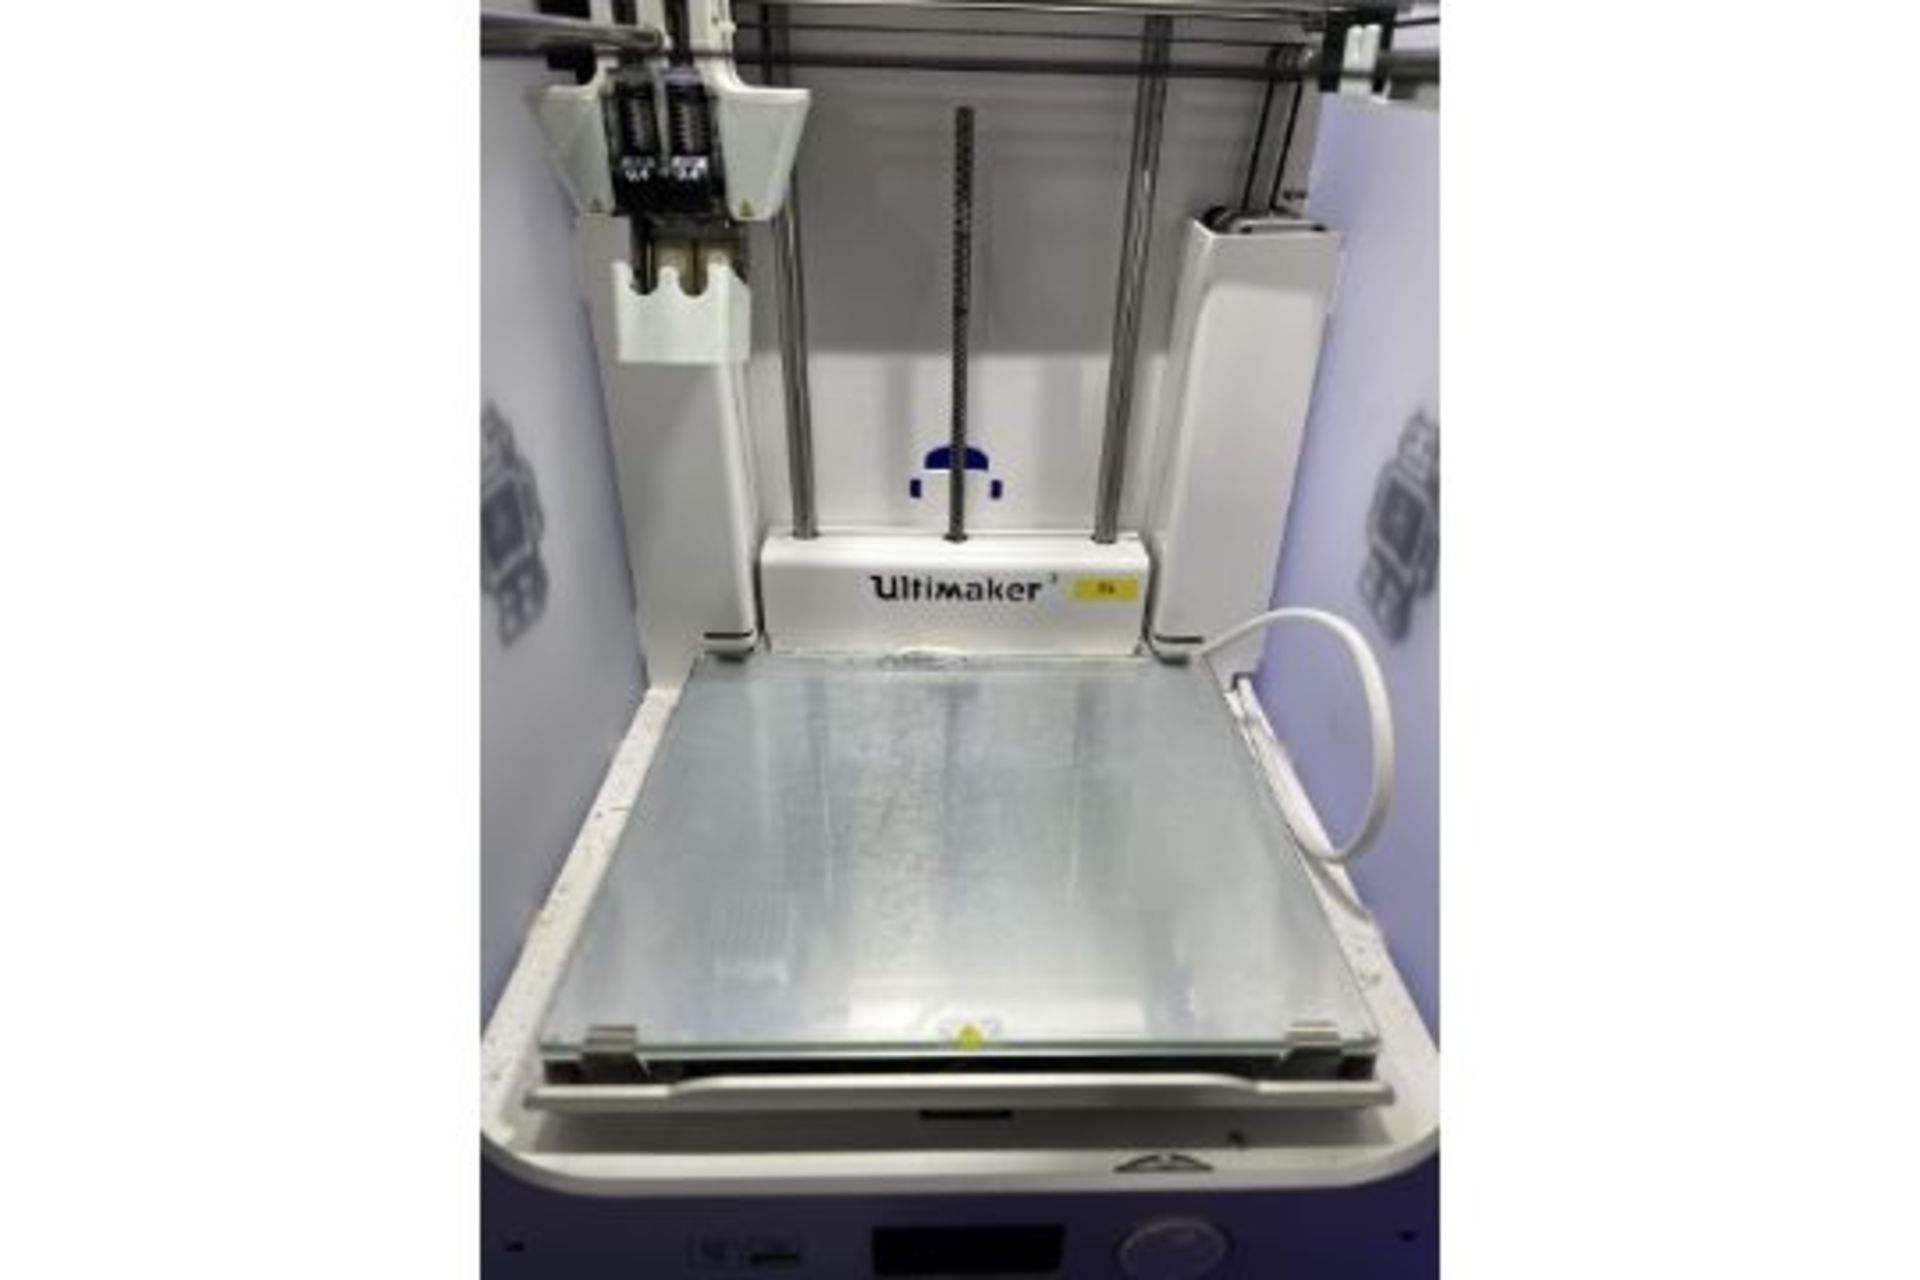 Ultimaker Model 3 3D printer - Image 2 of 5